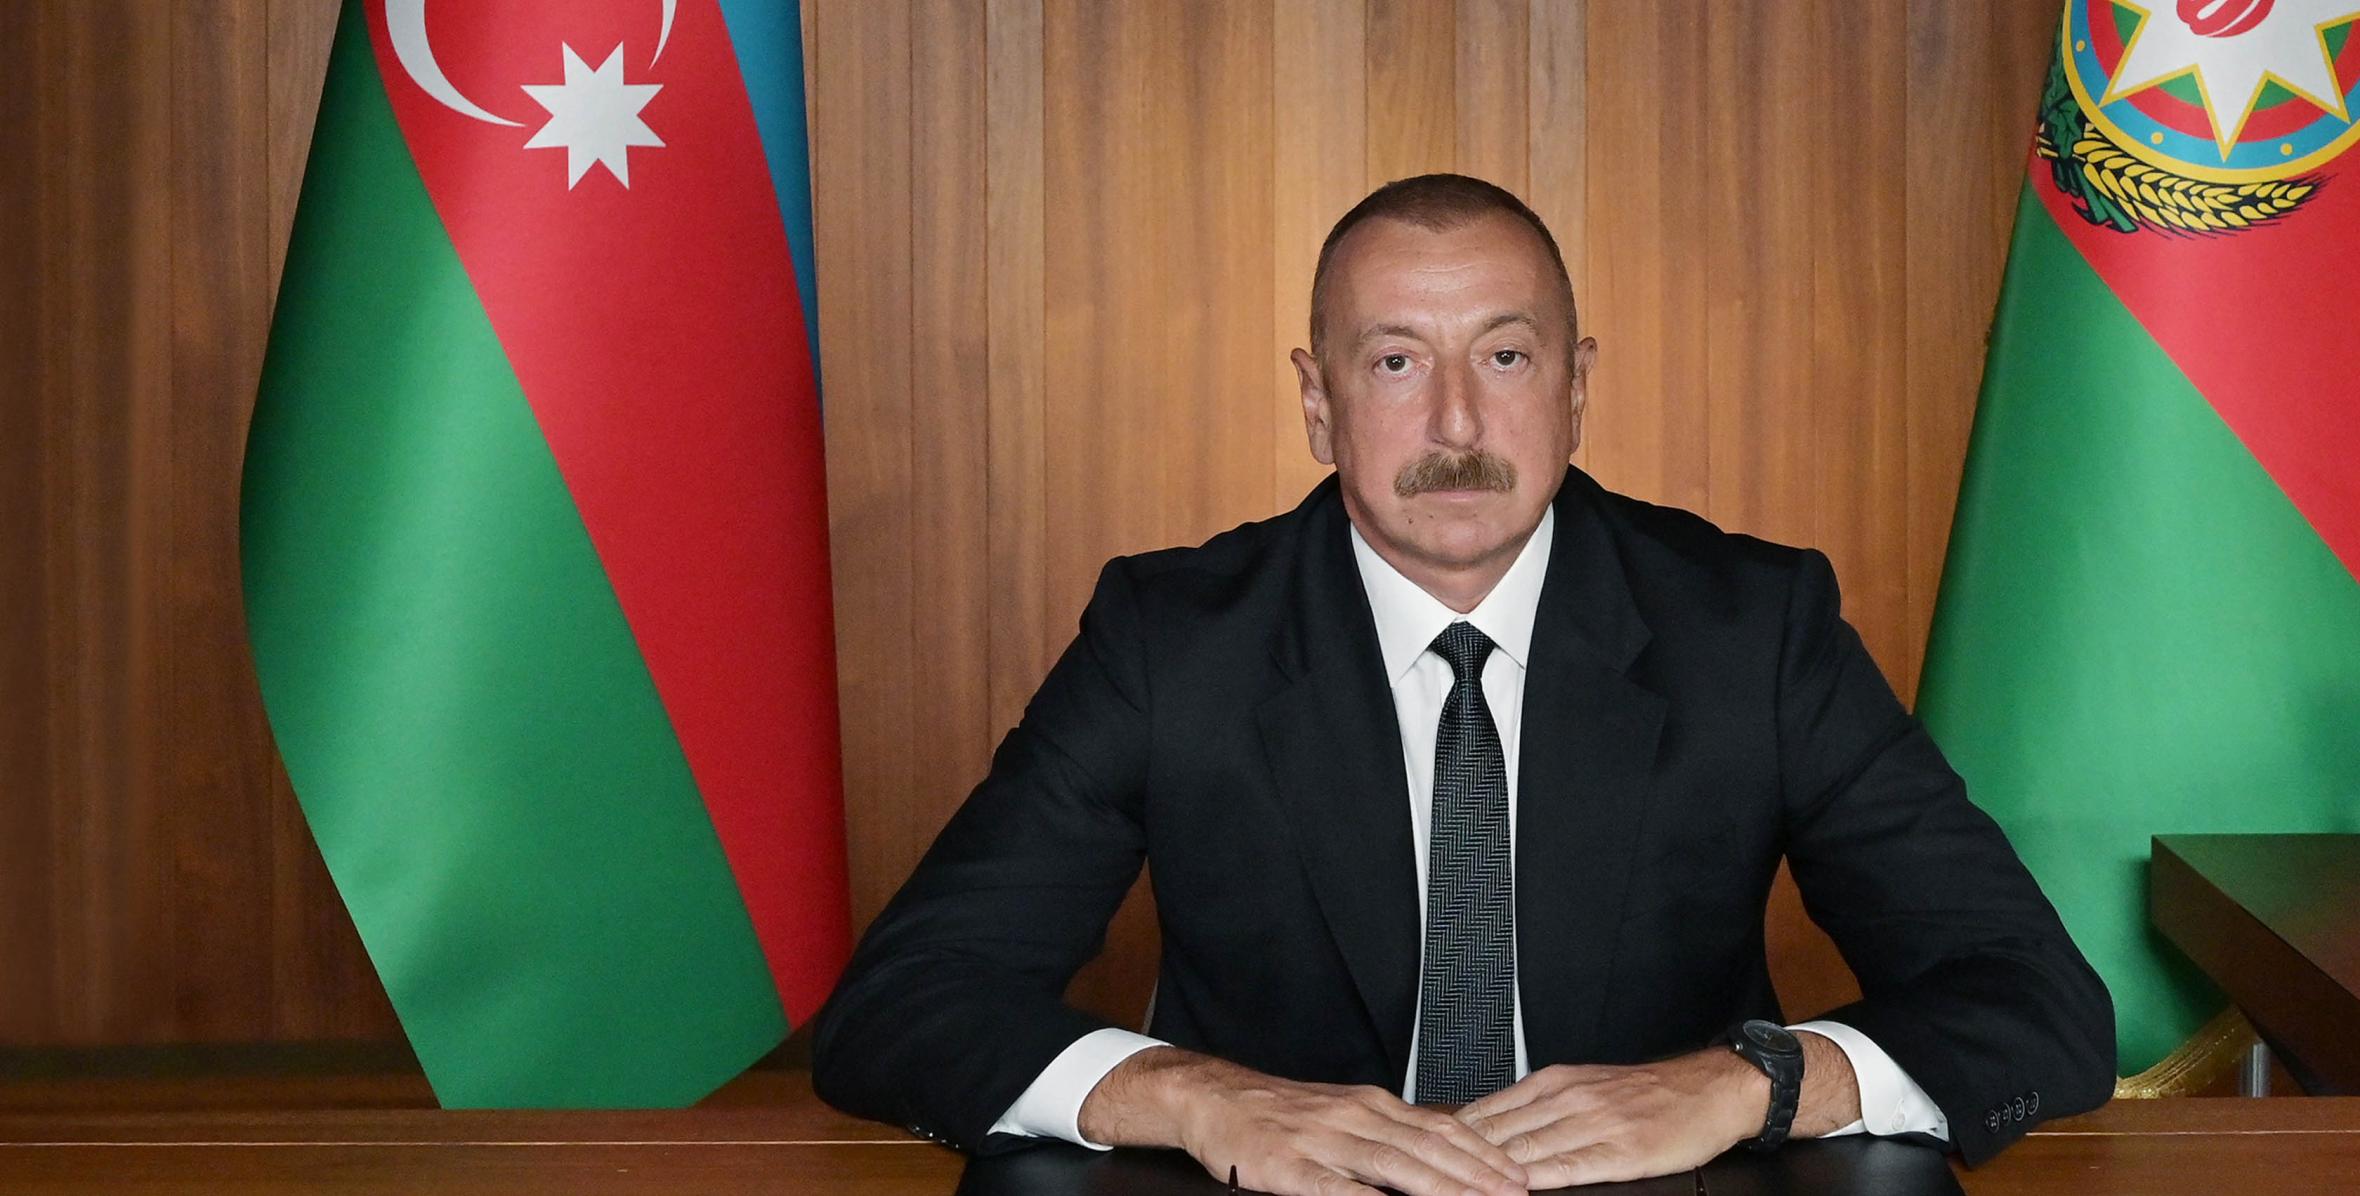 Президент Азербайджанской Республики, председатель Движения неприсоединения Ильхам Алиев выступил в видеоформате на заседании высокого уровня, посвященном 75-летию ООН, в рамках 75-й сессии Генеральной Ассамблеи ООН